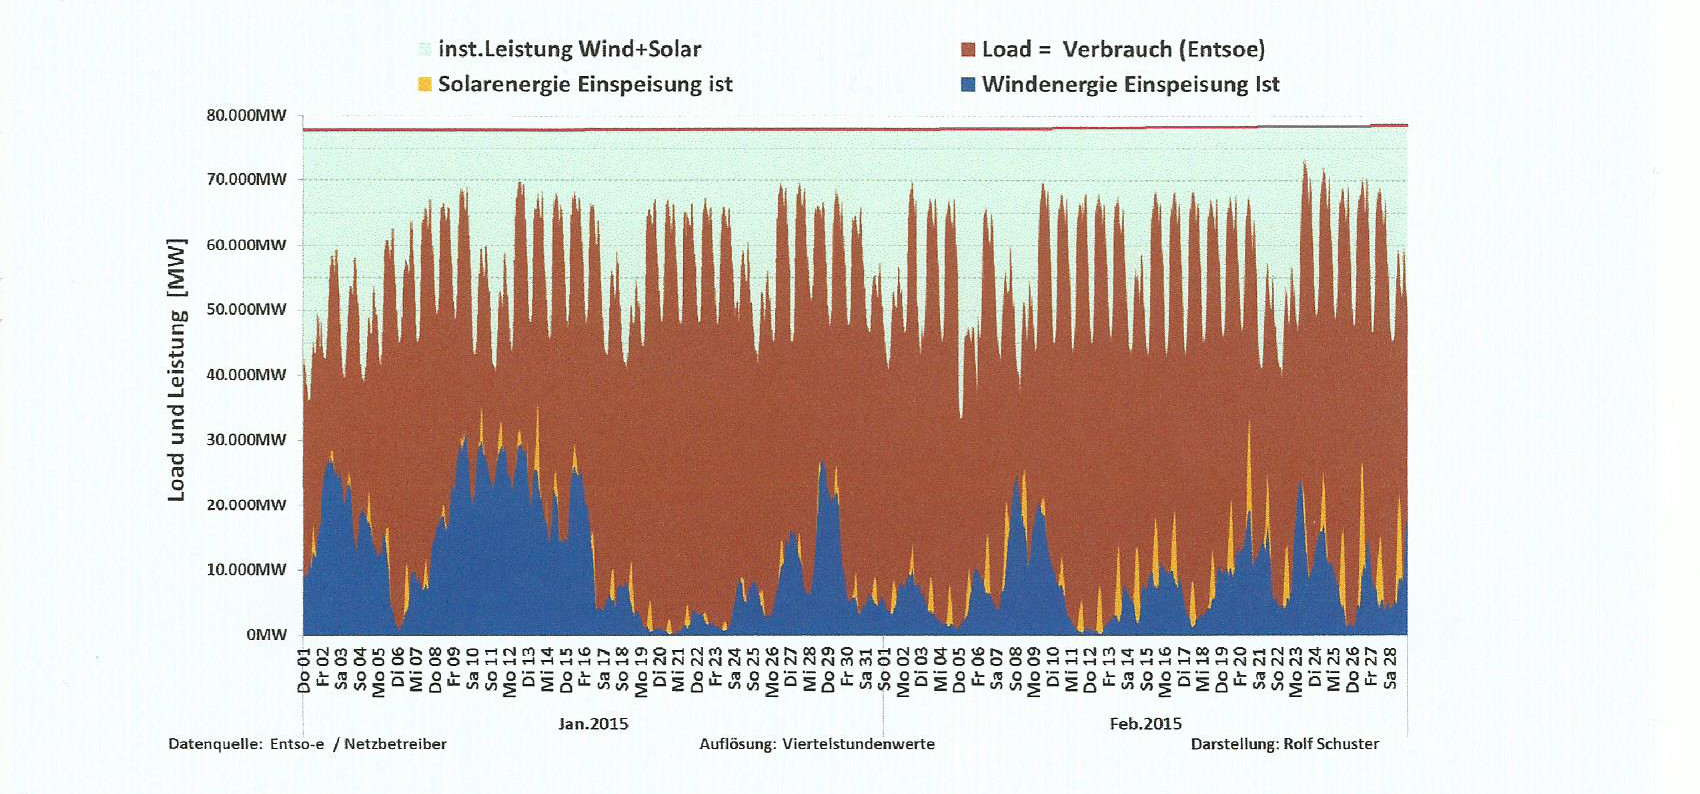 Stromverbrauch und Leistungseinspeisung aller Windenergie und Photovoltaik Anlagen in Deutschland